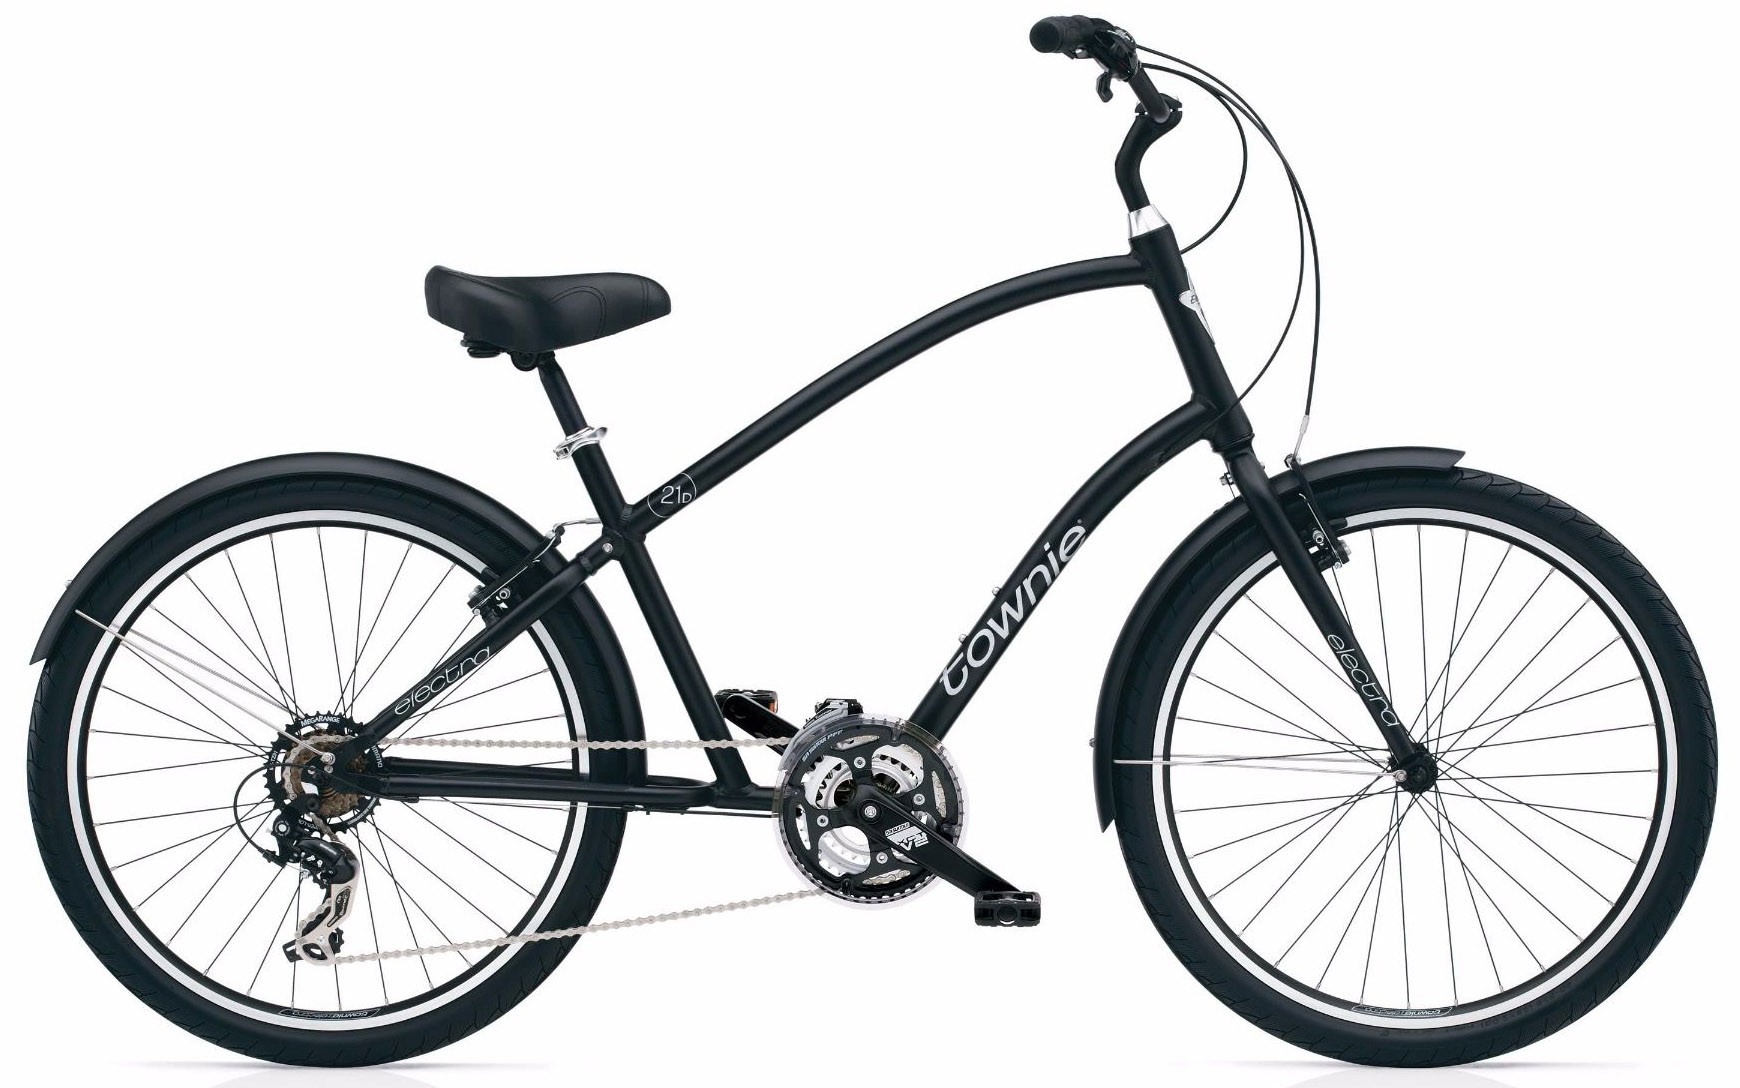  Отзывы о Велосипеде круизере Electra Townie Original 21D Mens 2020